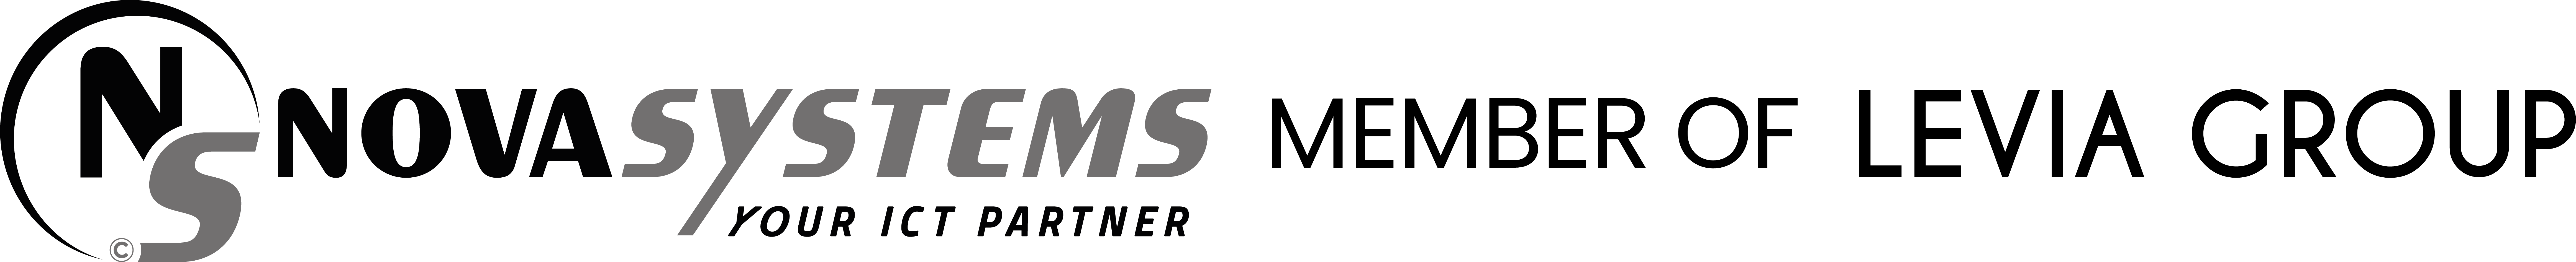 Logo nova systems member of levia